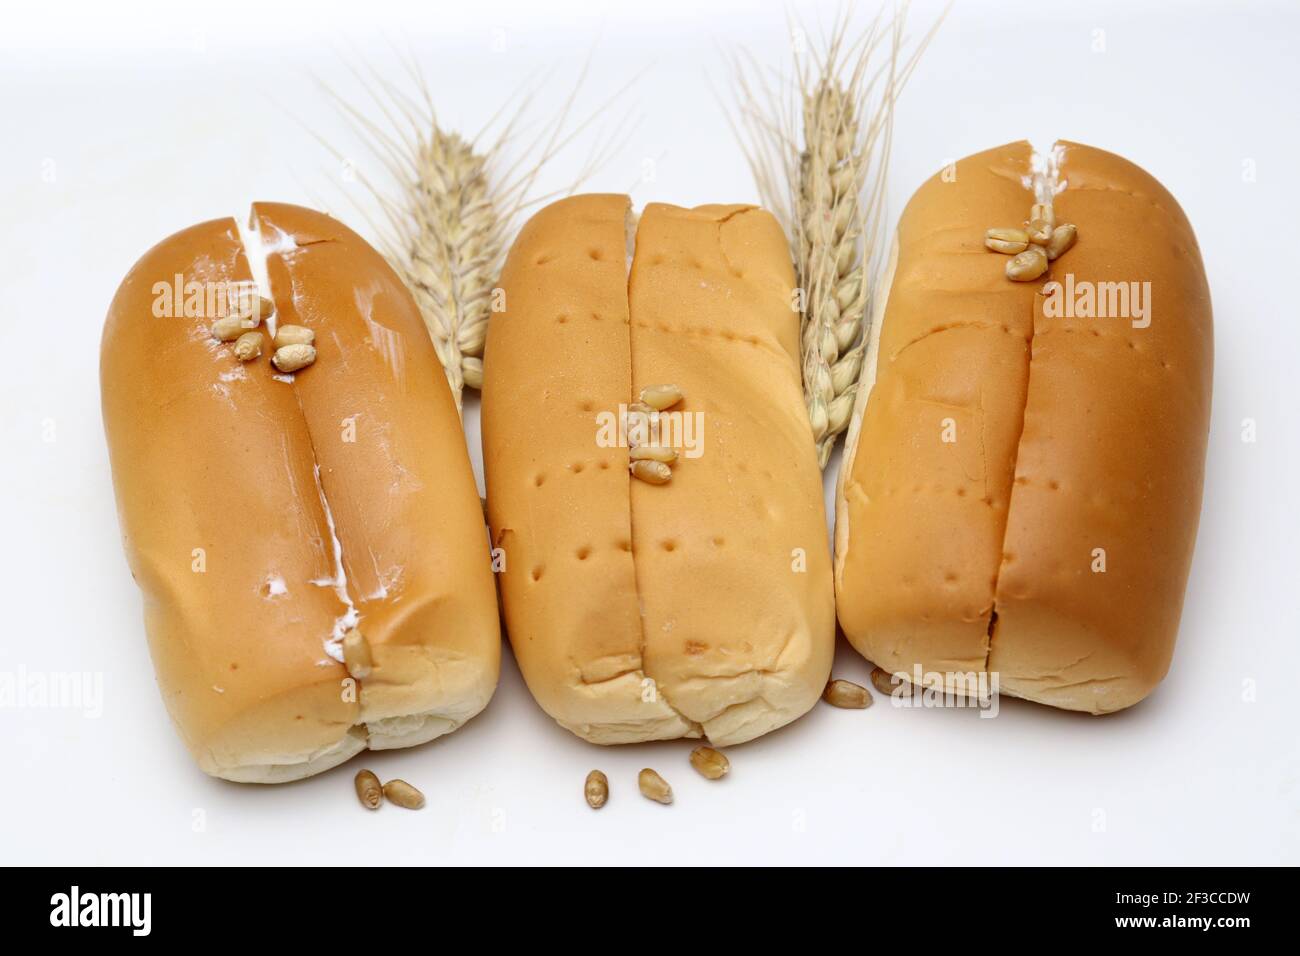 pain savoureux et sain et blé mûr sur fond blanc Banque D'Images